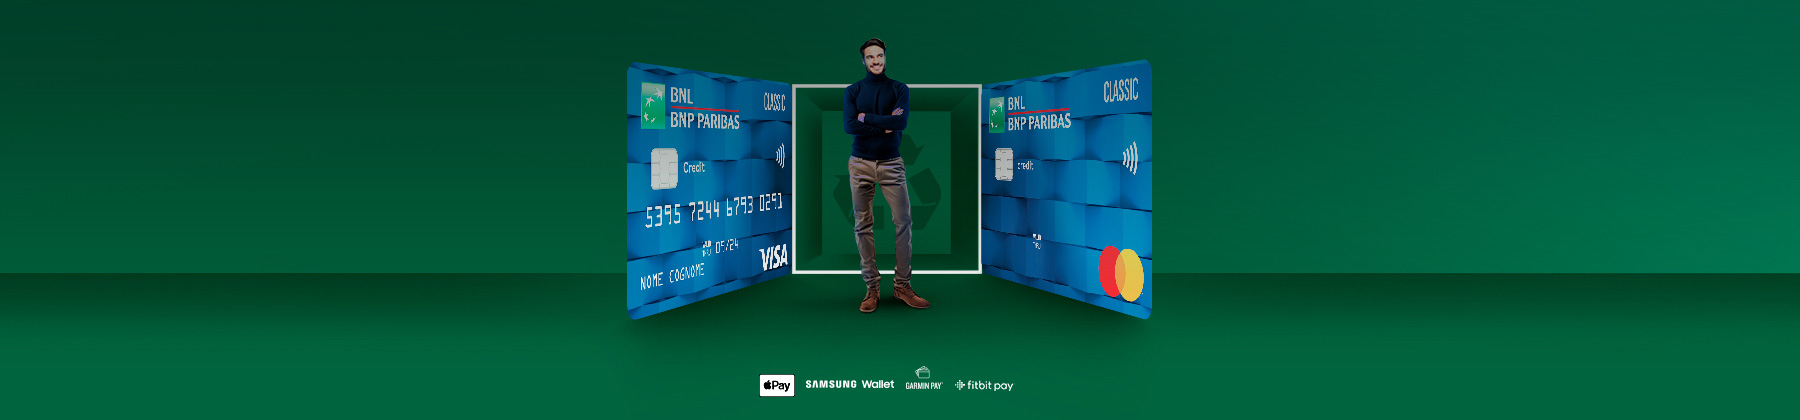 due carte di credito BNL Classic blu con tecnologia contactless in materiale PVC